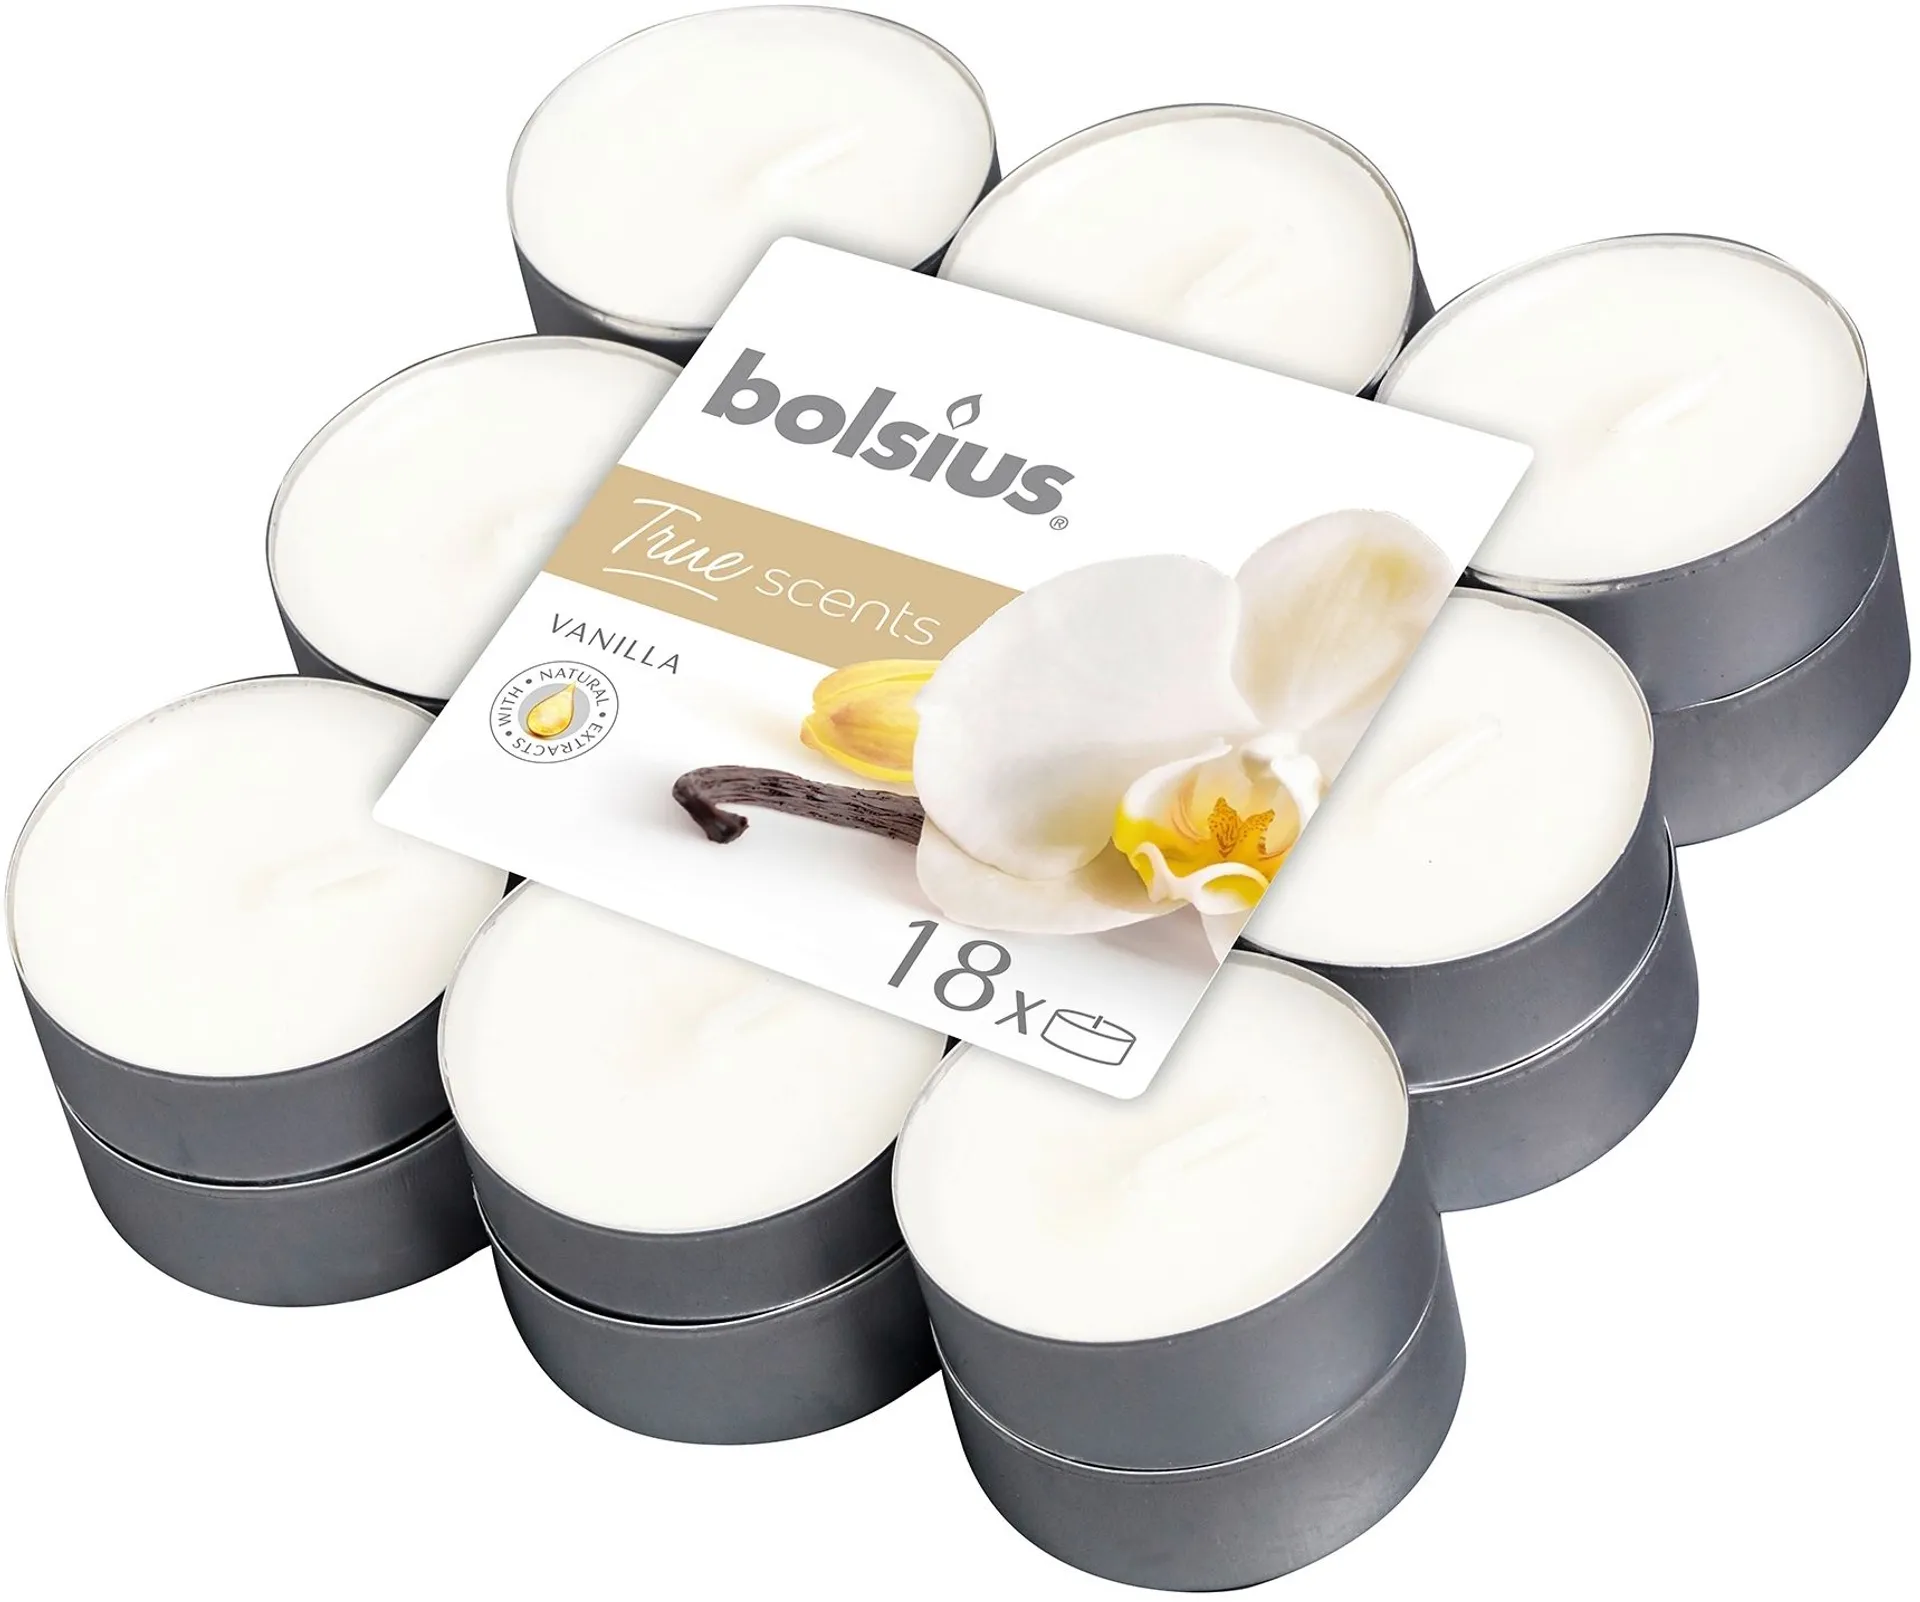 Bolsius True Scents – tuoksulämpökynttilät – Vanilla – norsunluu – 18 kpl/pakkaus - 2